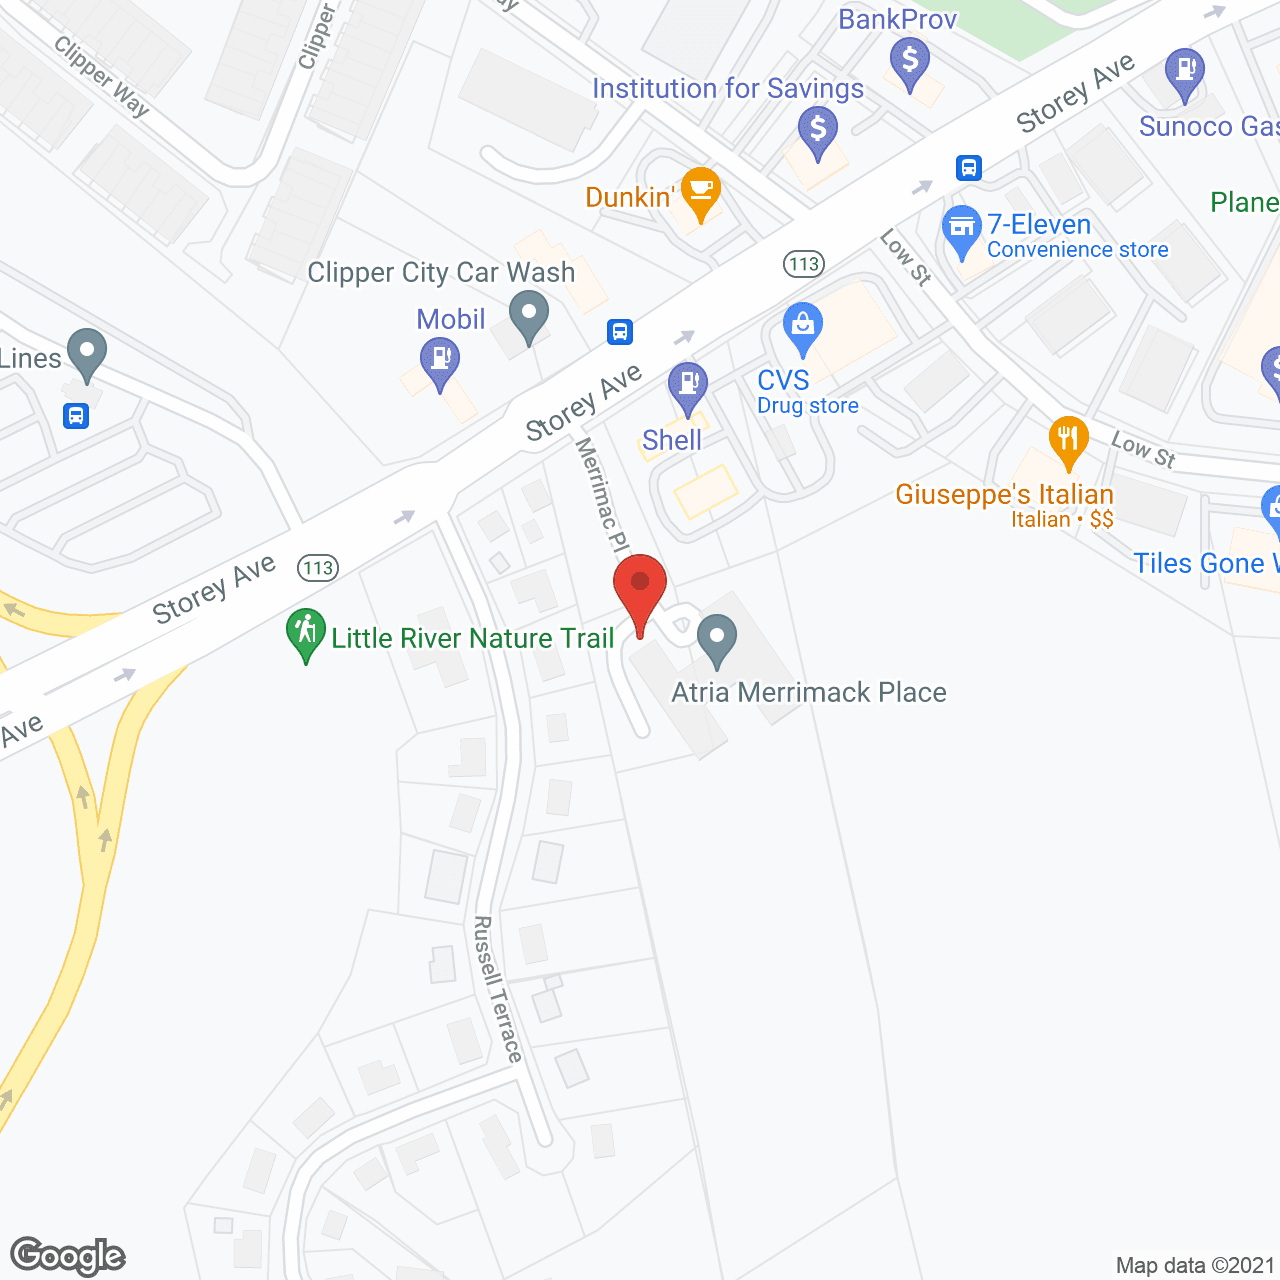 Atria Merrimack Place in google map